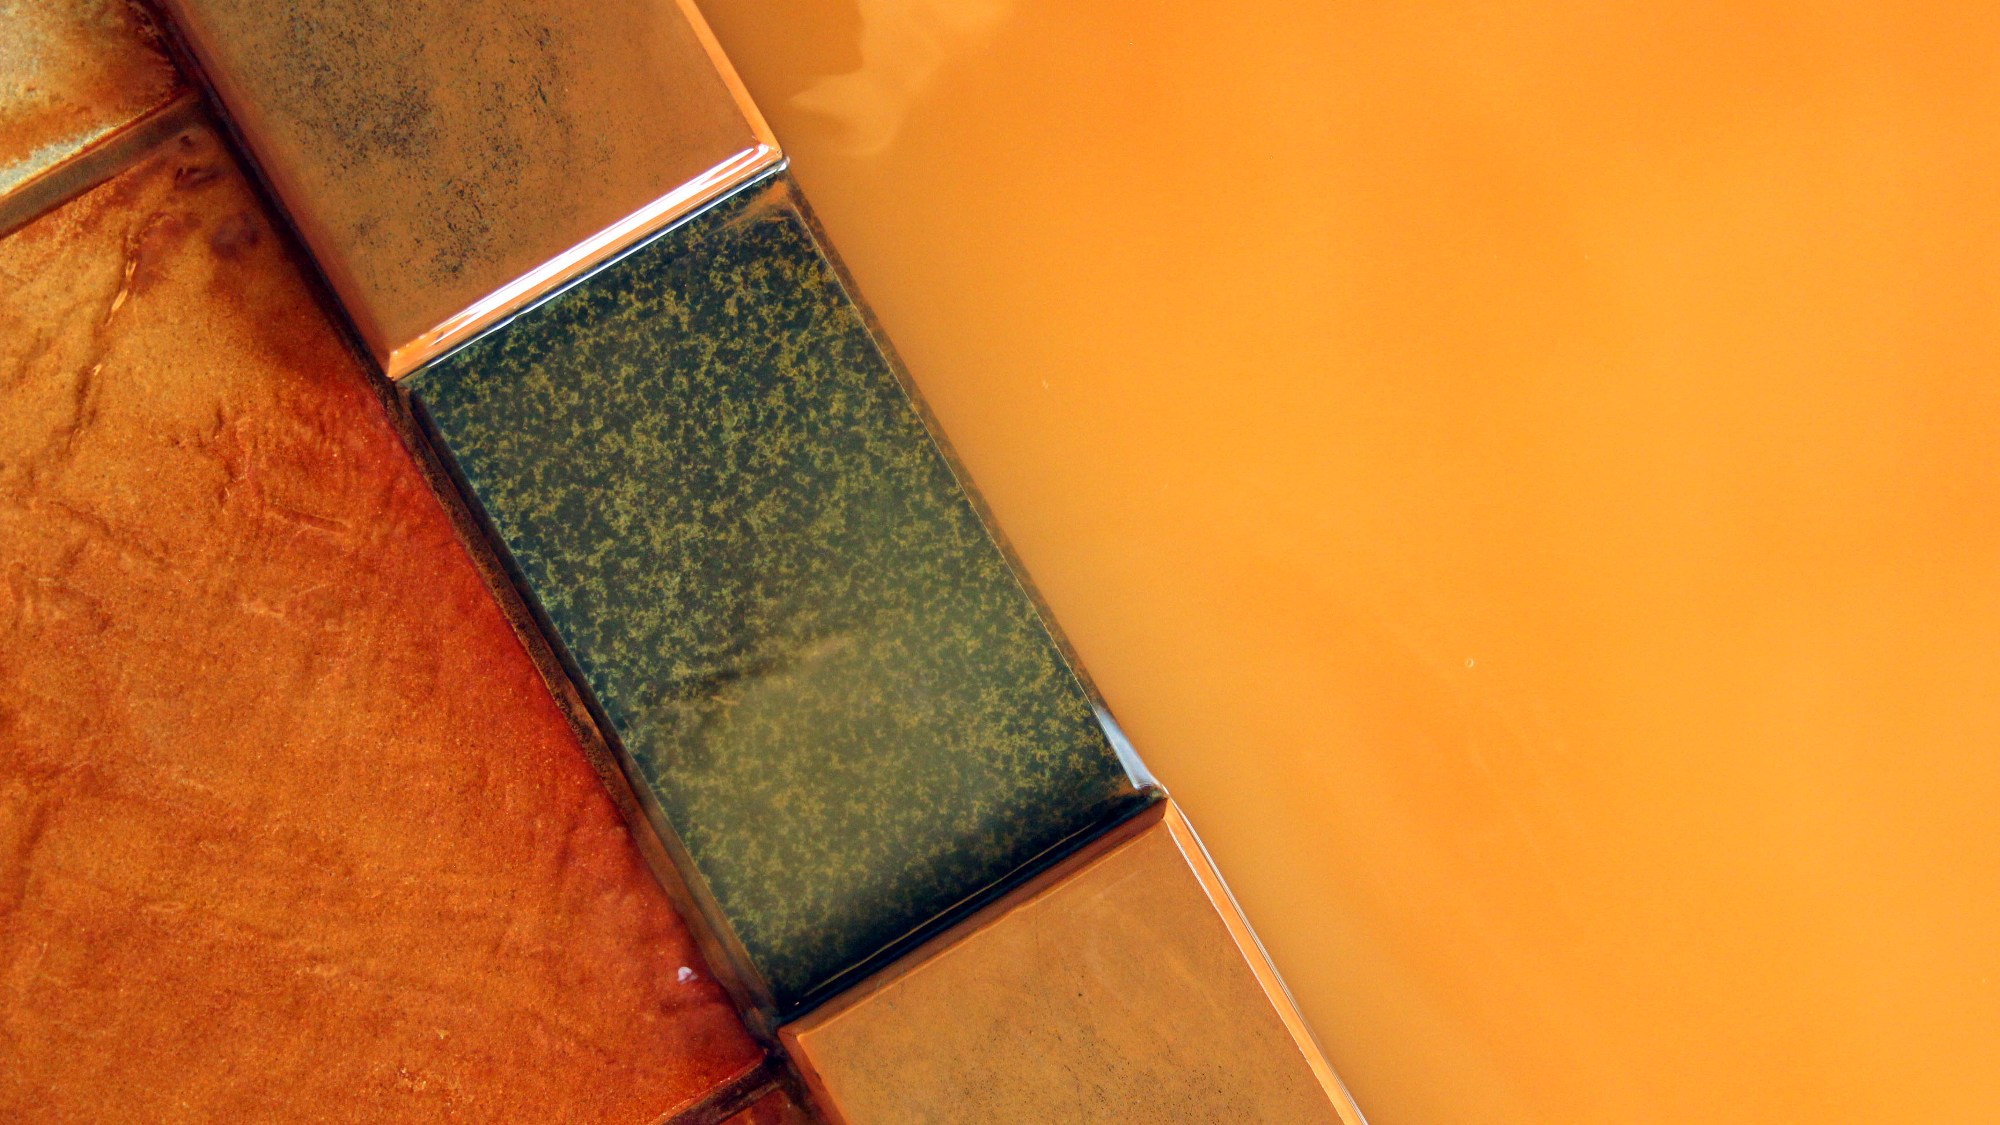 １階にある、木々に囲まれた秘湯風呂「岳」濃厚な赤褐色の秘湯がたっぷり注がれる湯舟。